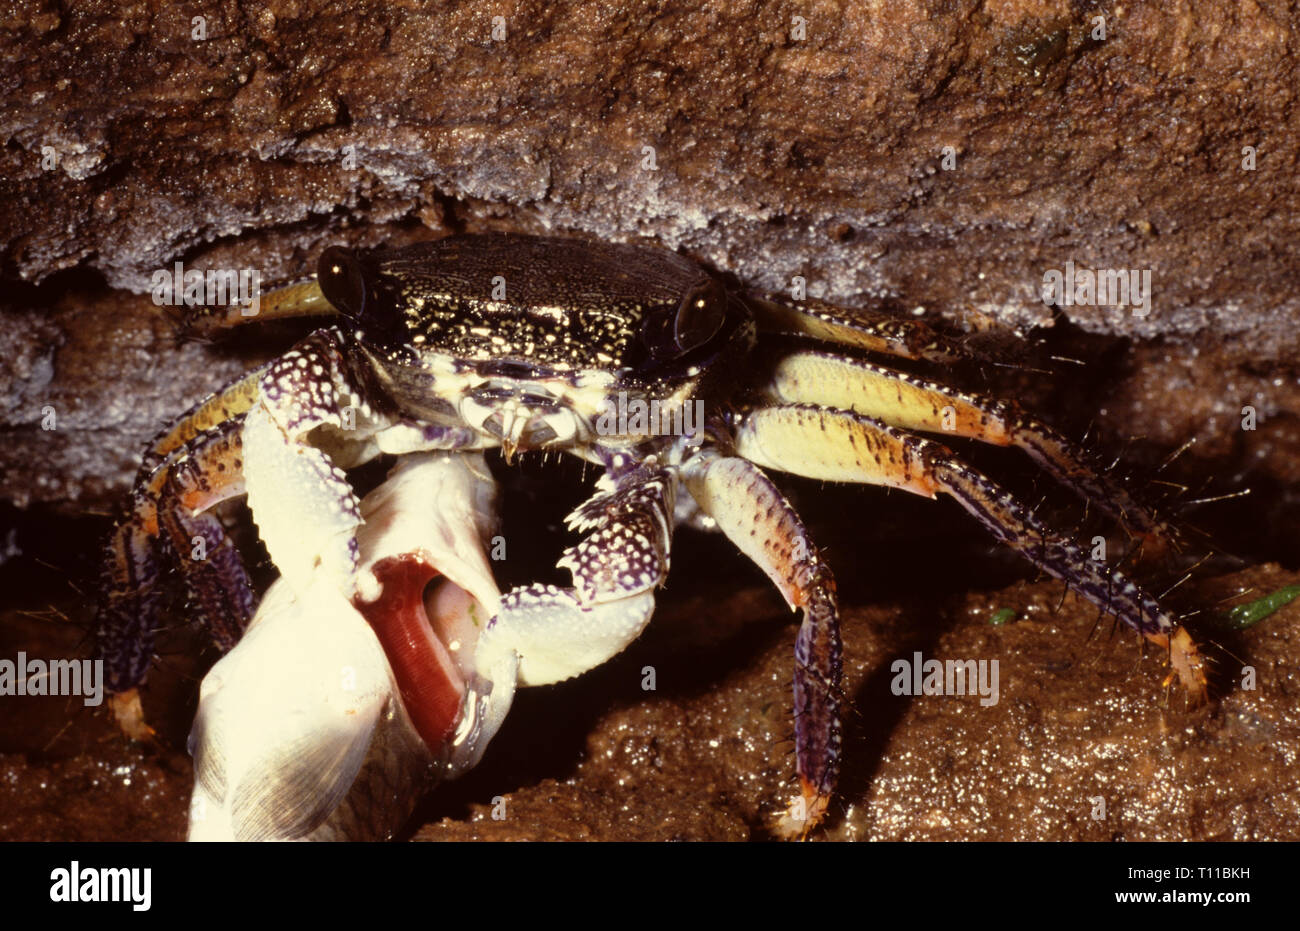 Crabe de mangrove (Goniopsis pelii) nourrir un poisson Banque D'Images